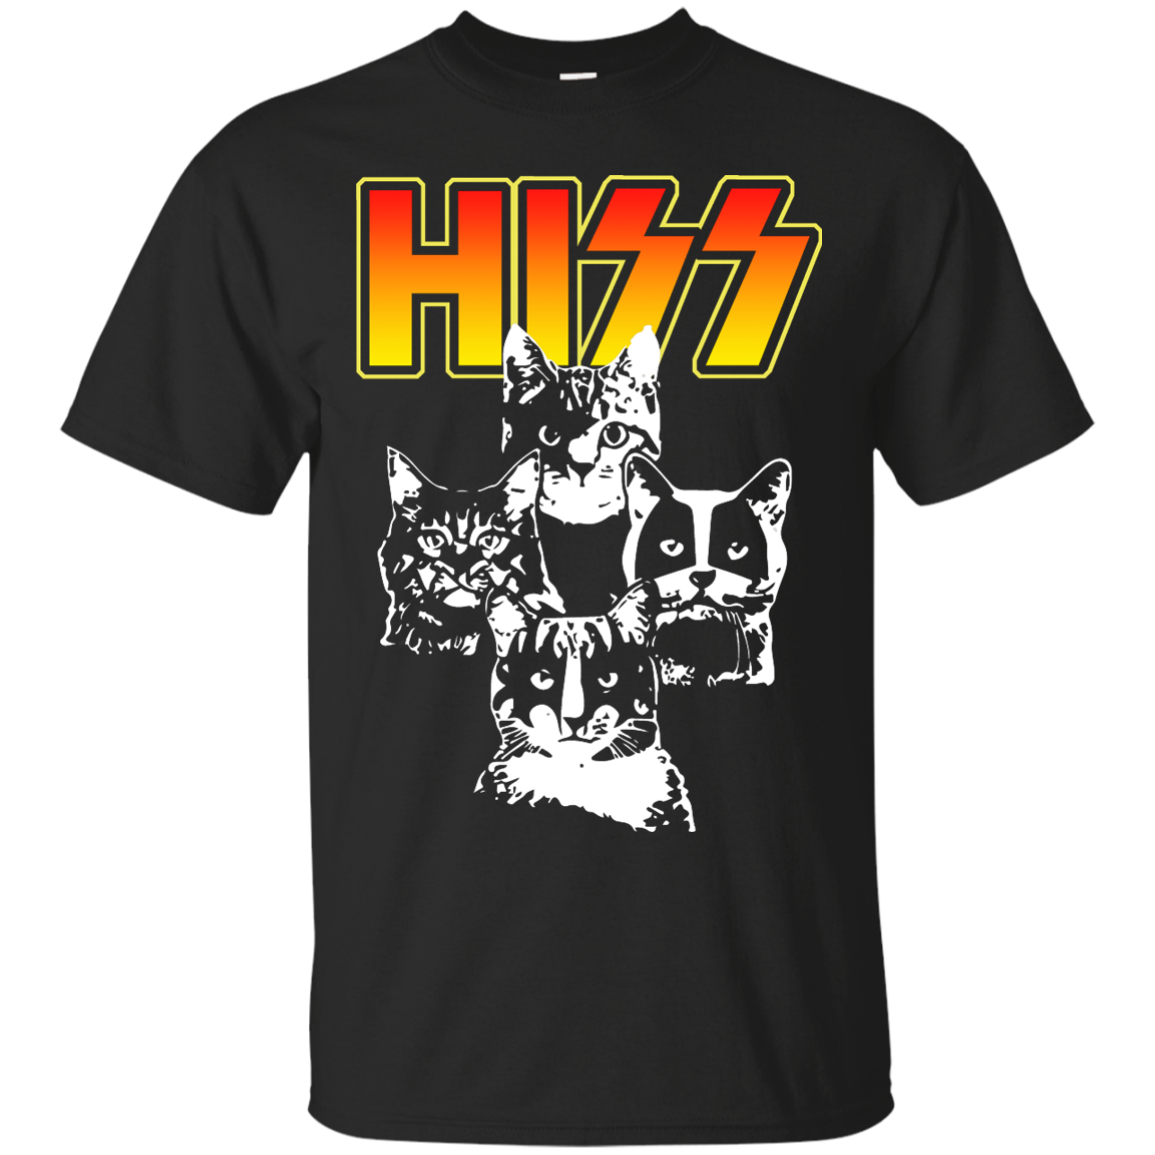 Hiss Kiss Cats Kittens Rock T-Shirts, Hoodies, Tank Top